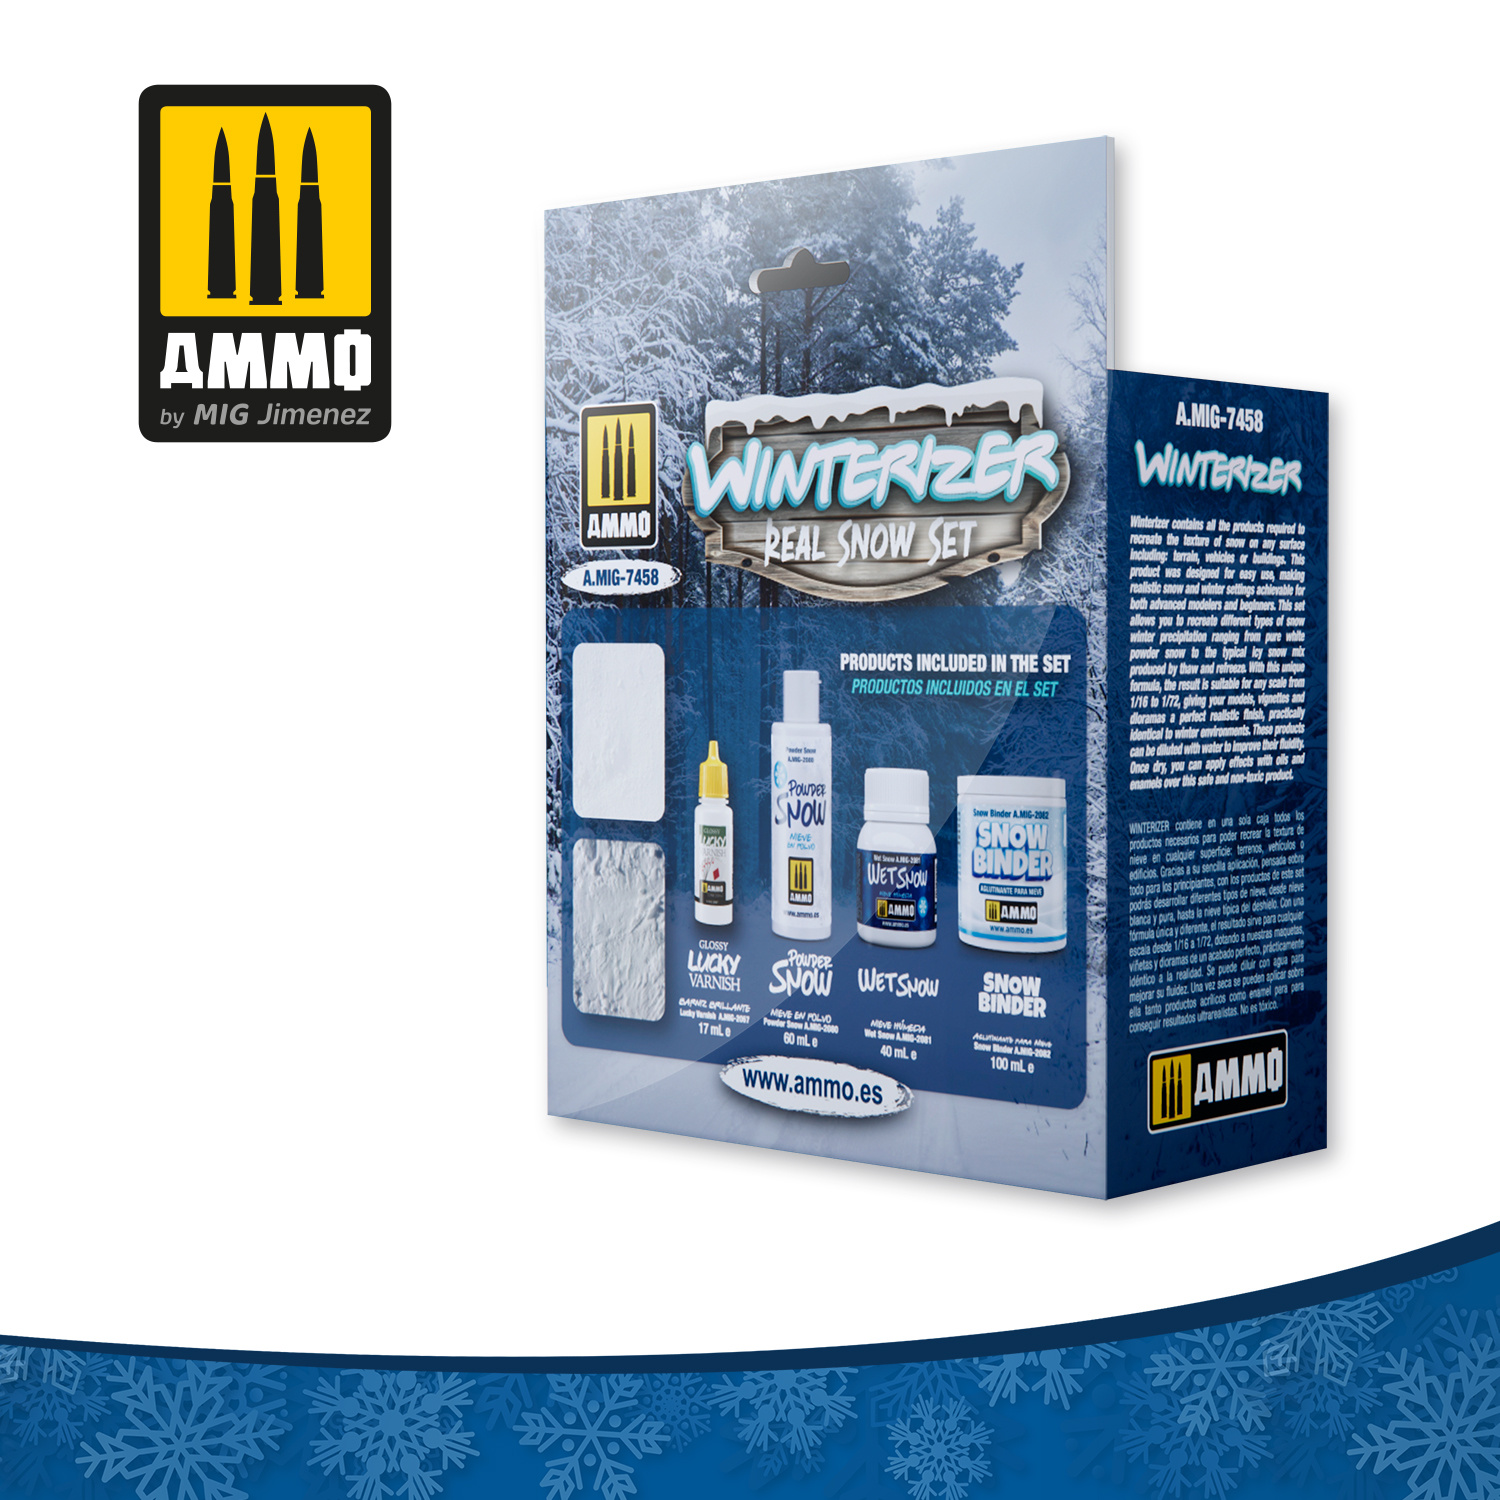 Ammo by Mig Jimenez Winterizer Set - Ammo by Mig Jimenez - A.MIG-7458